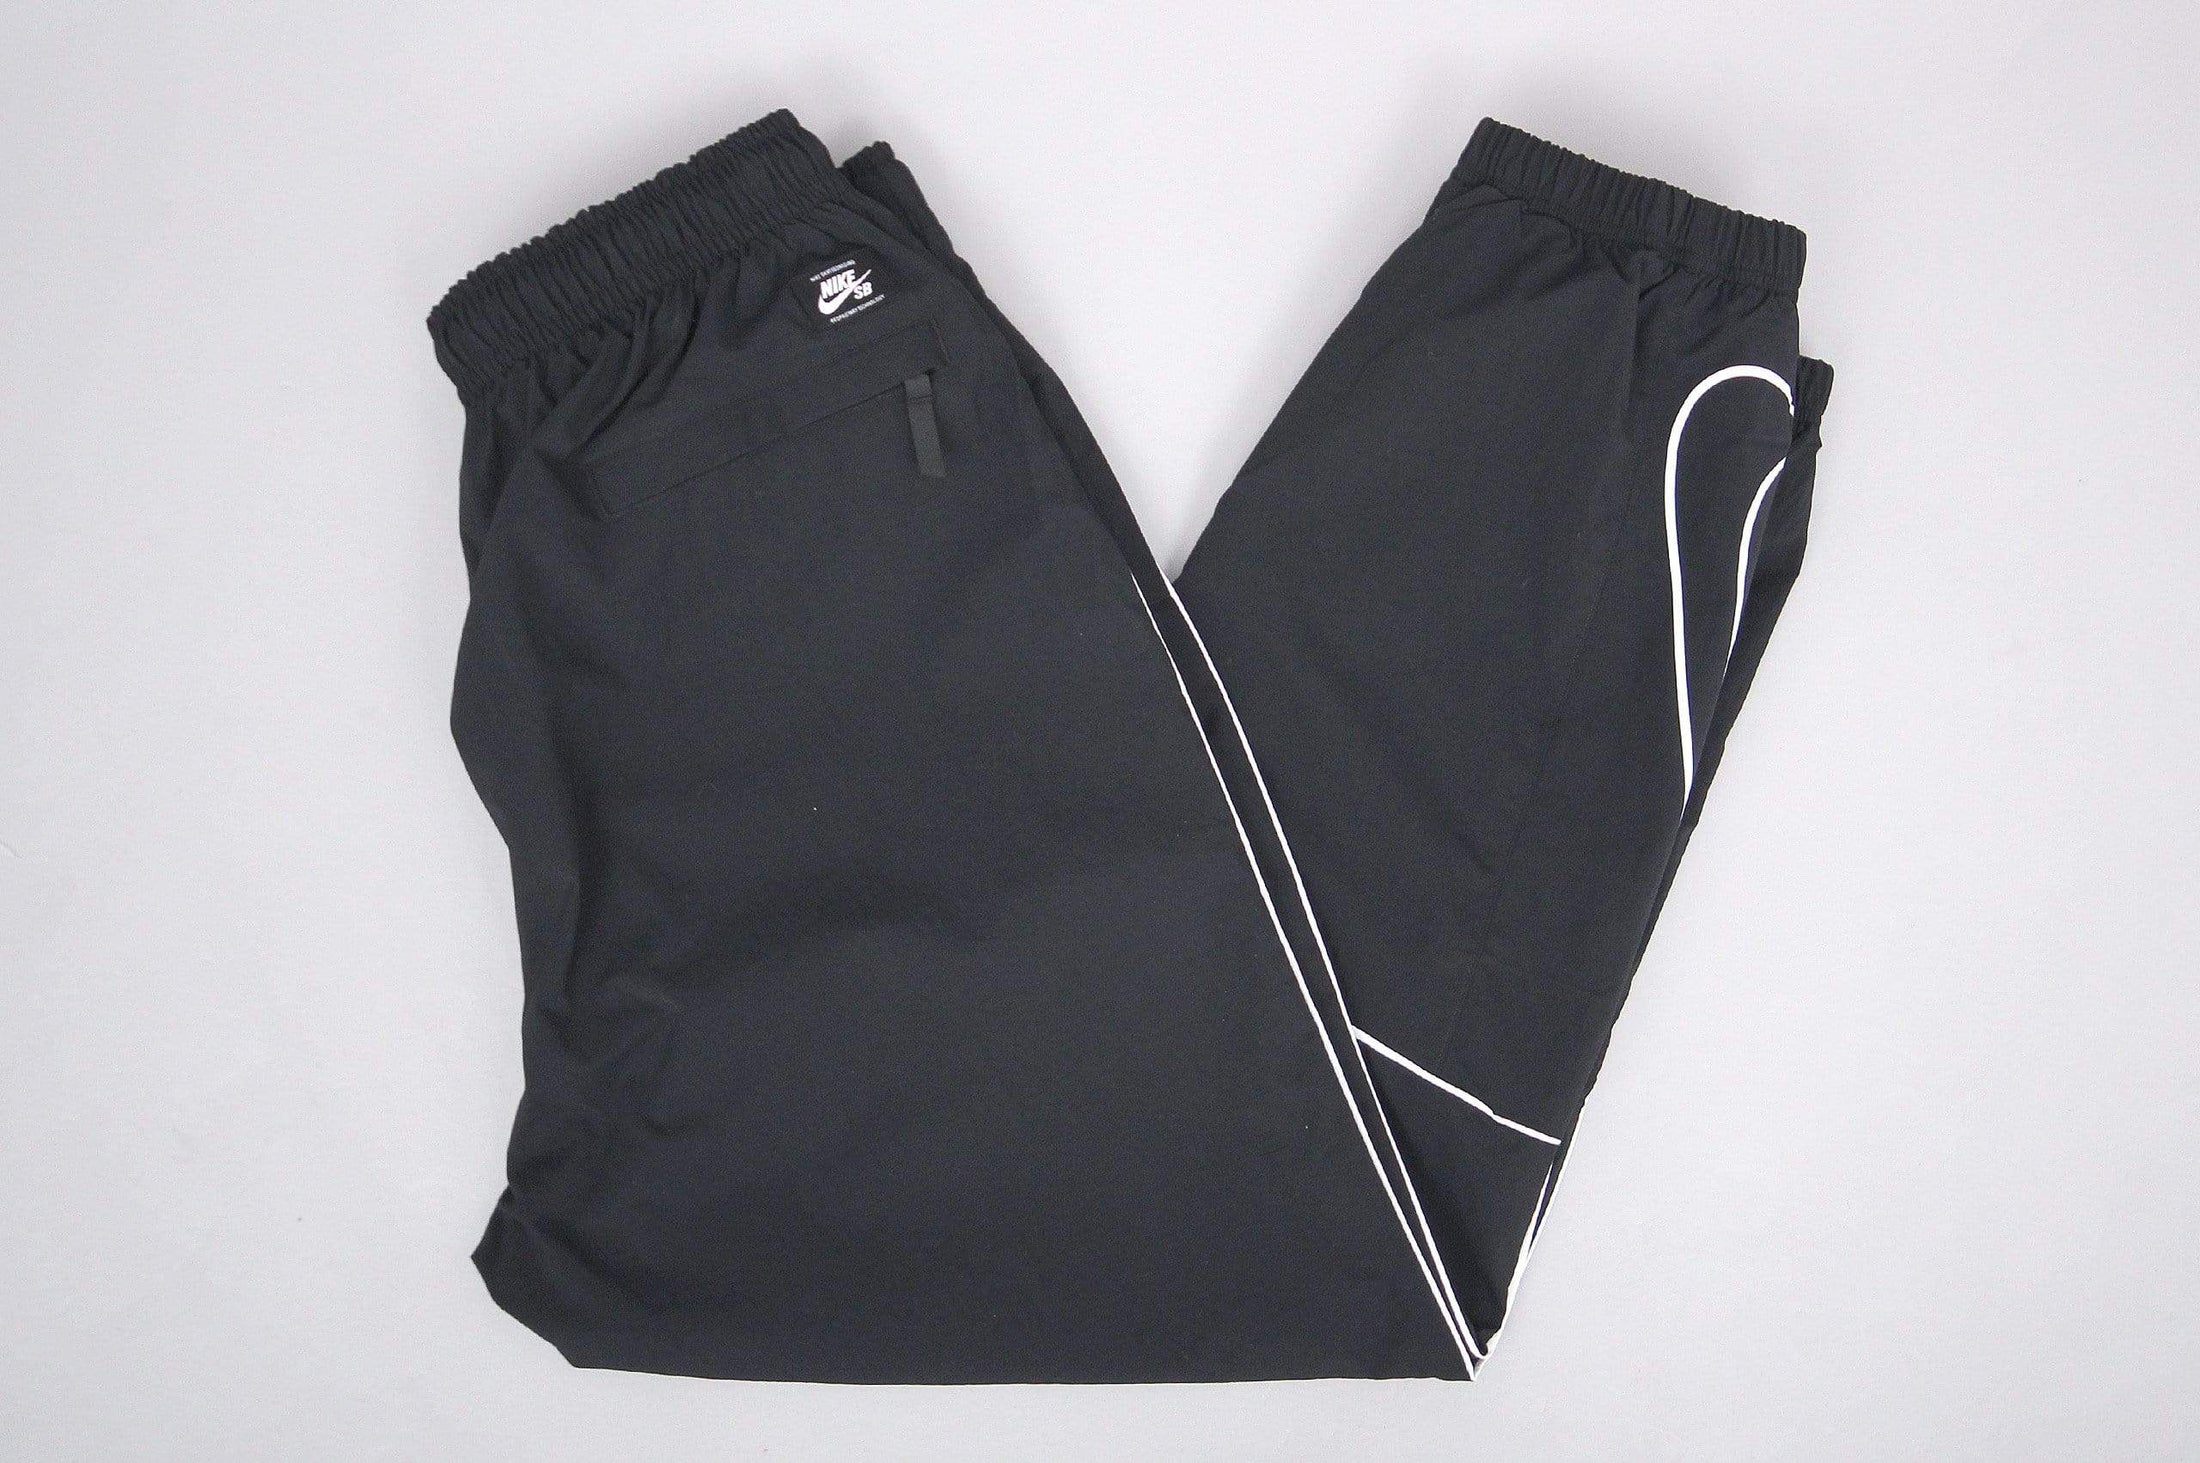 Nike SB Swoosh Track Pants Black / White